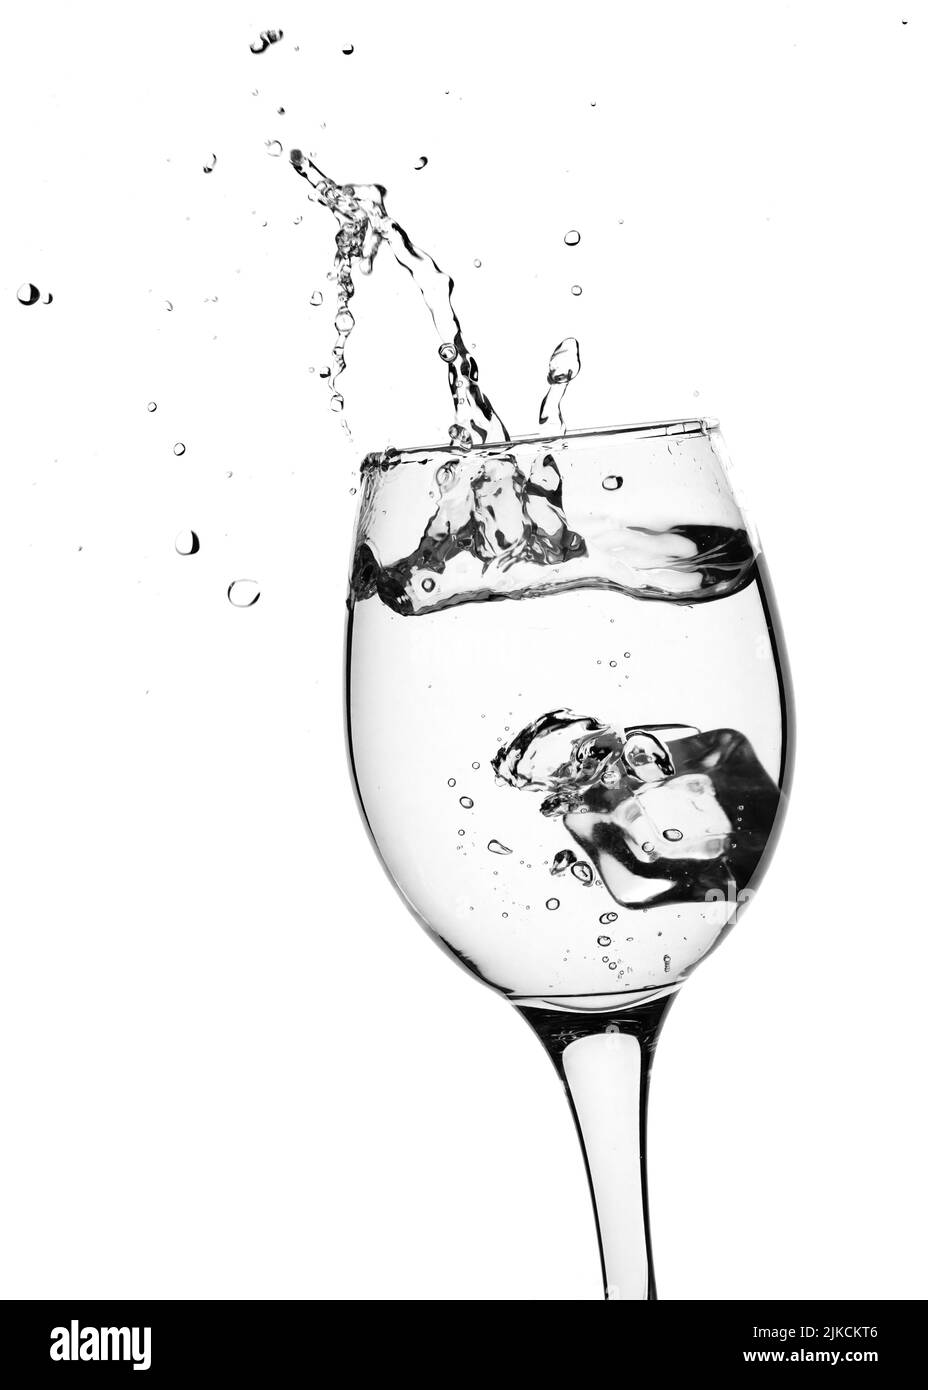 Vaso de bebida clara o agua con chapoteo de cubitos de hielo. Aislado sobre fondo blanco Foto de stock